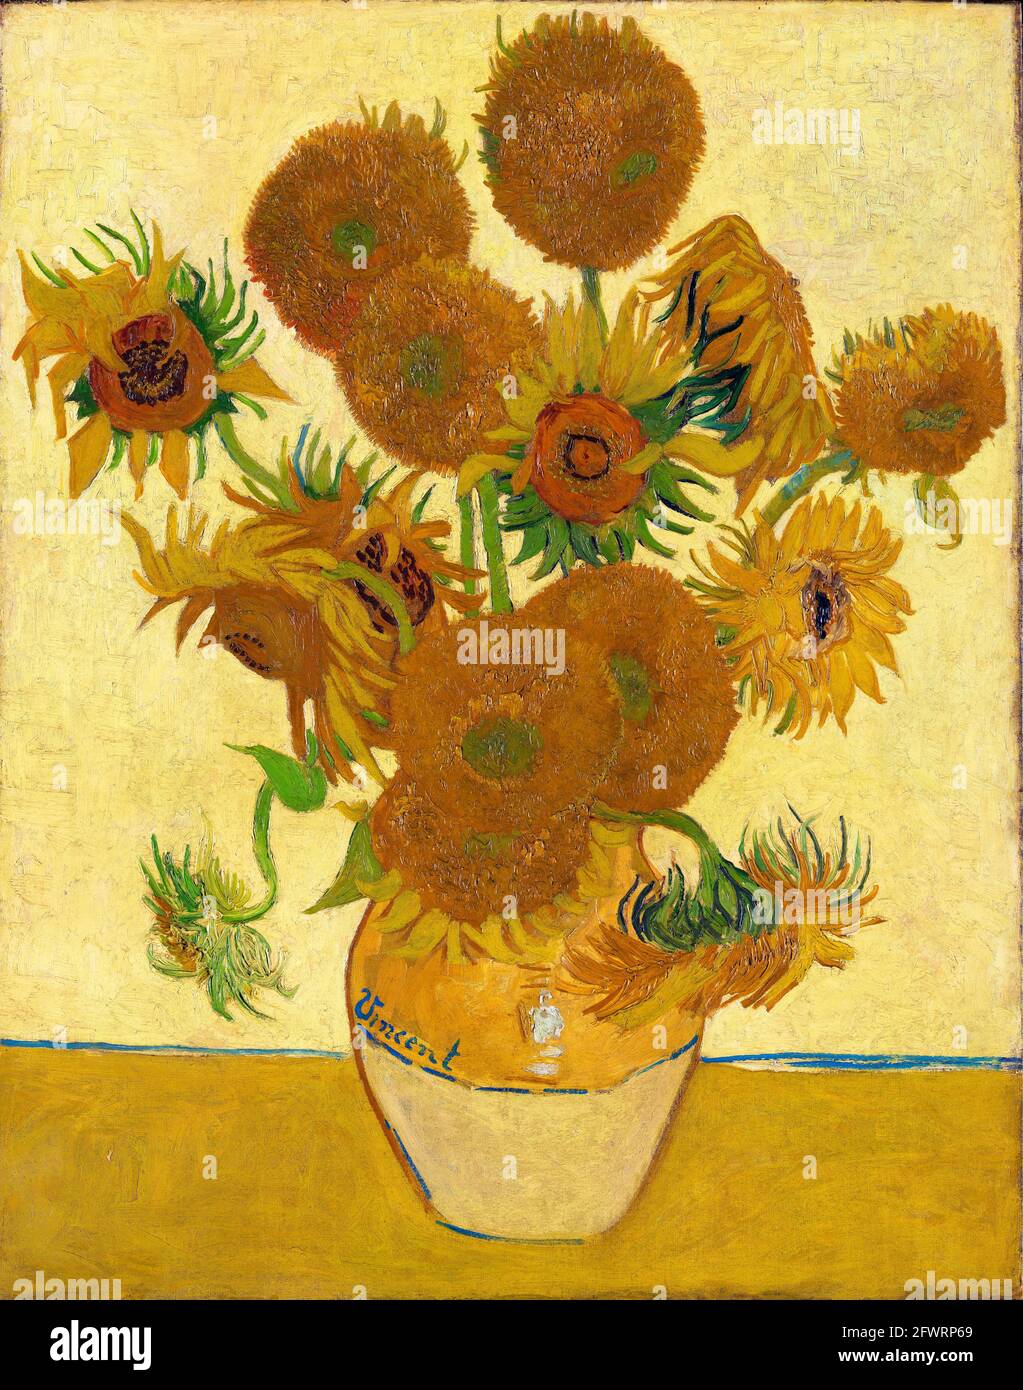 Tournesols par Vincent van Gogh (1853-1890), huile sur toile, 1888 Banque D'Images